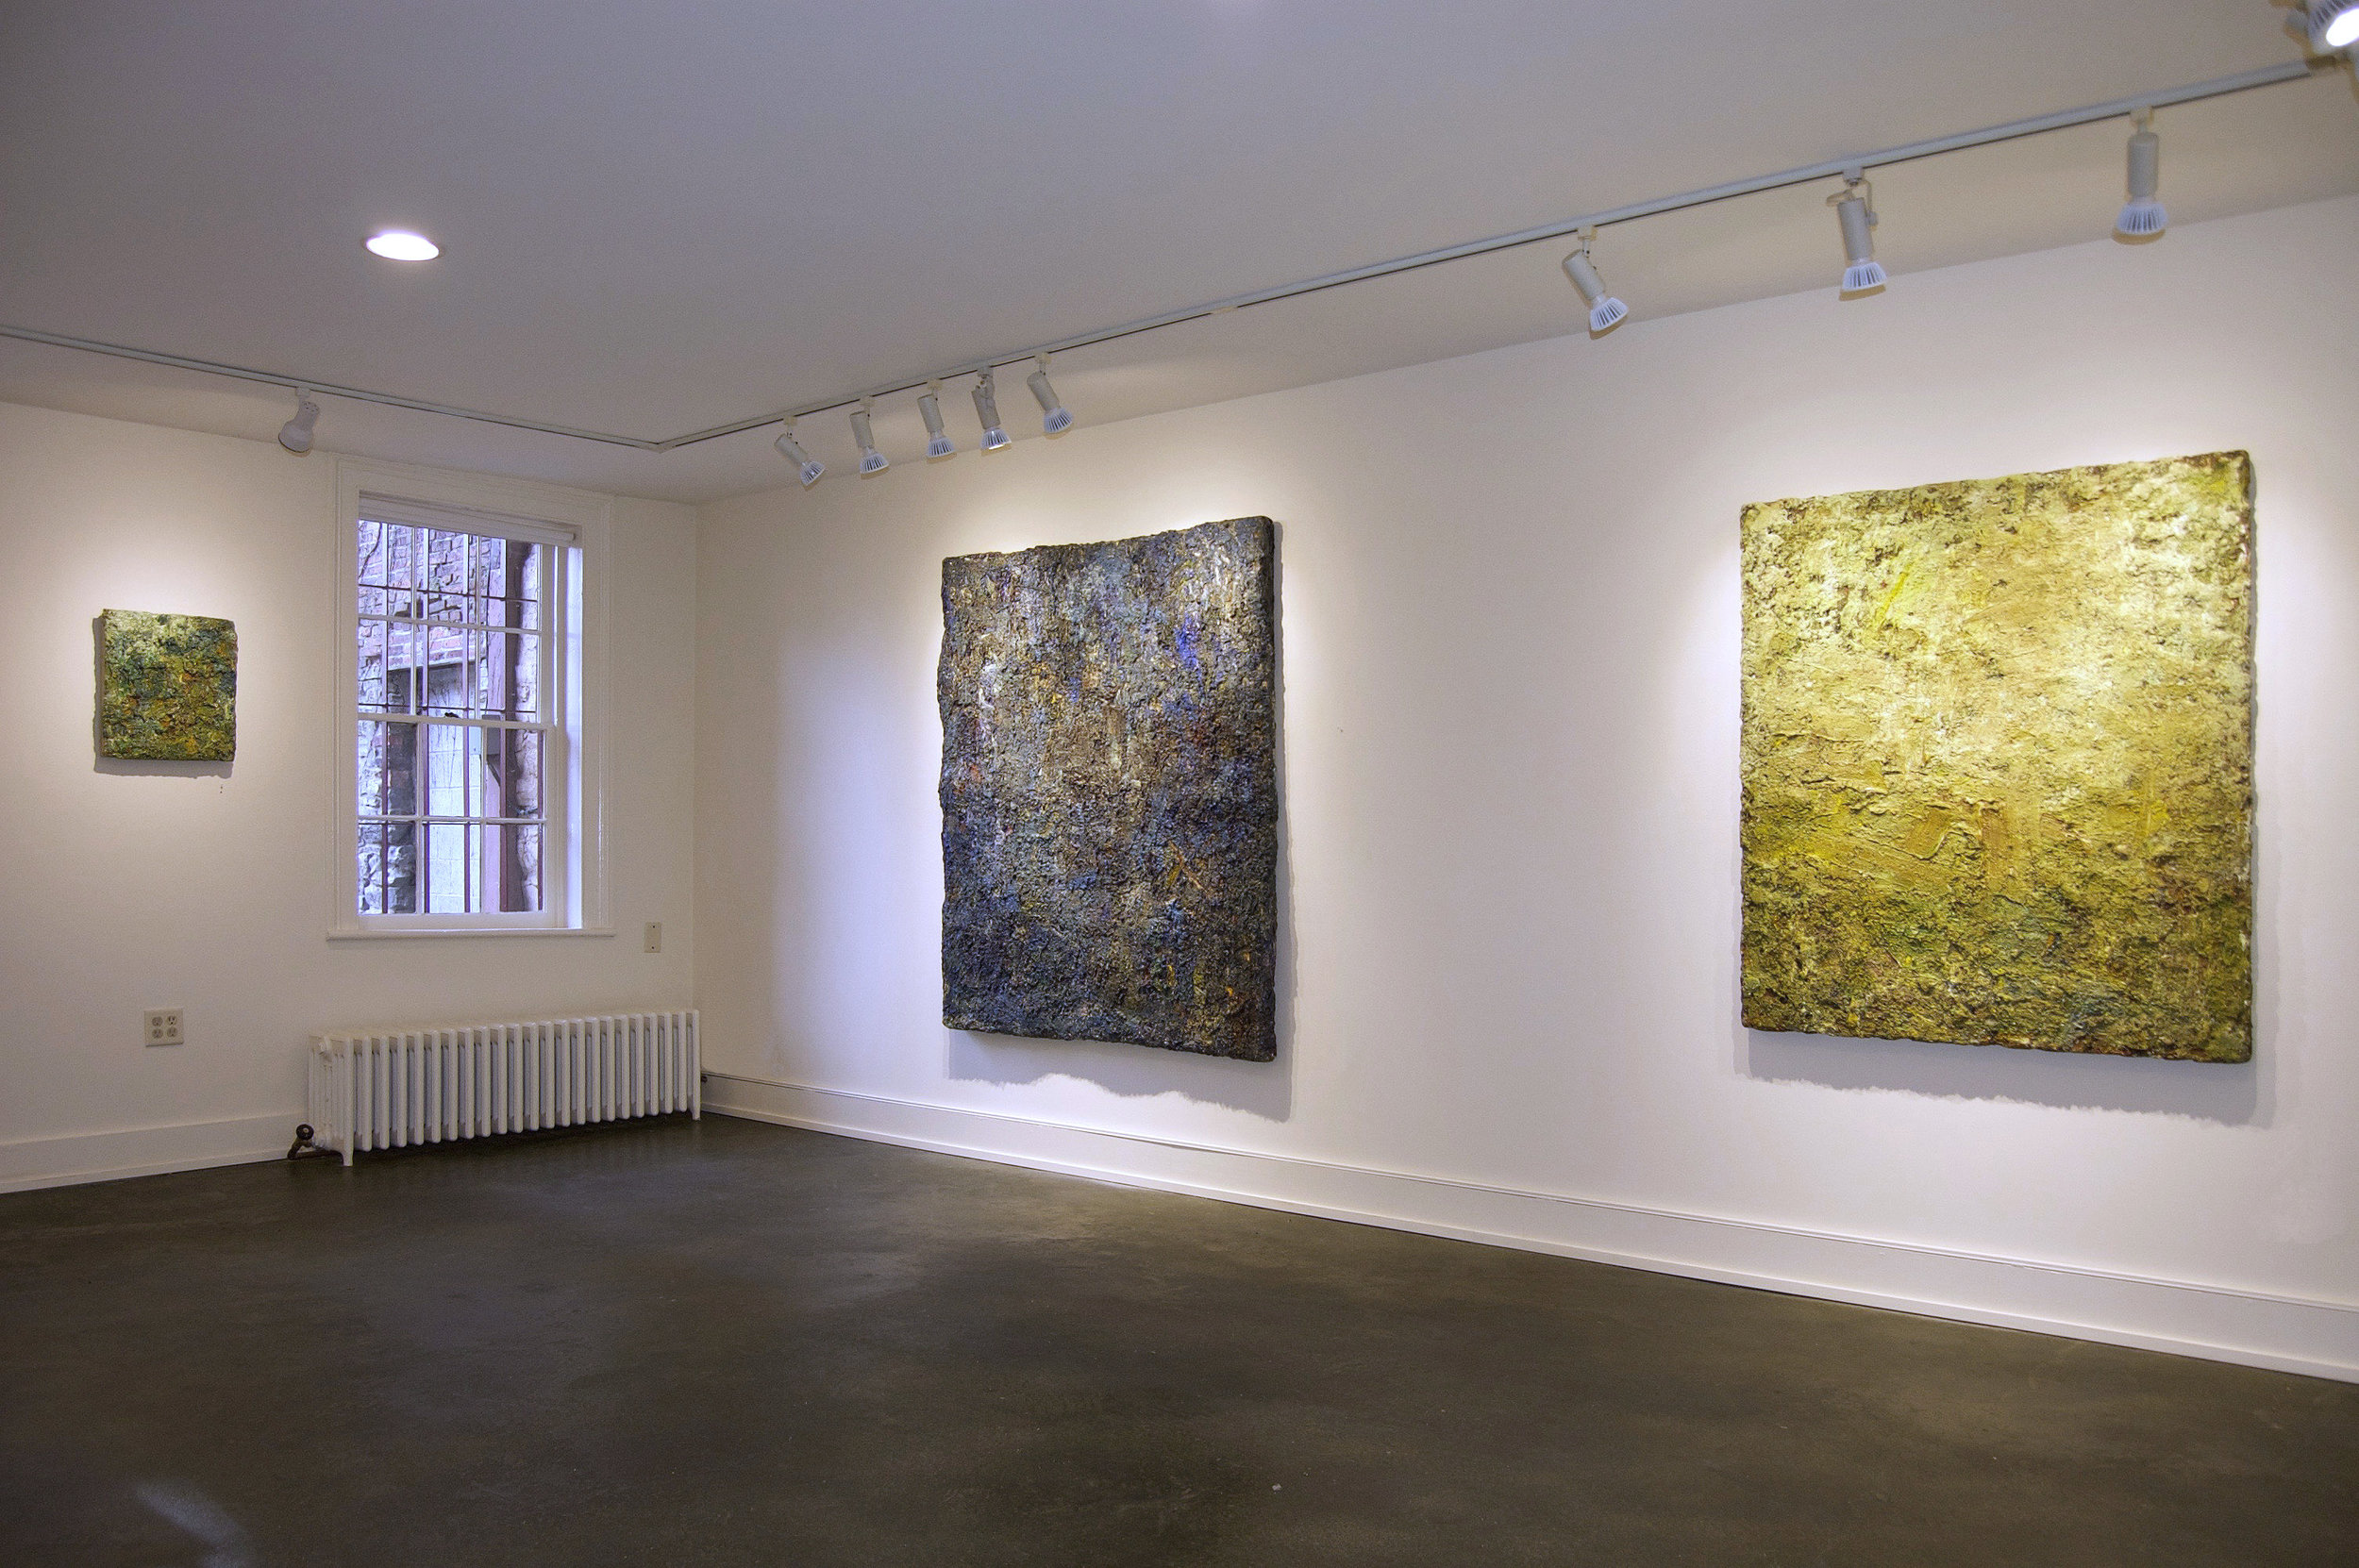  John Davis Gallery, Hudson, NY, 2016 